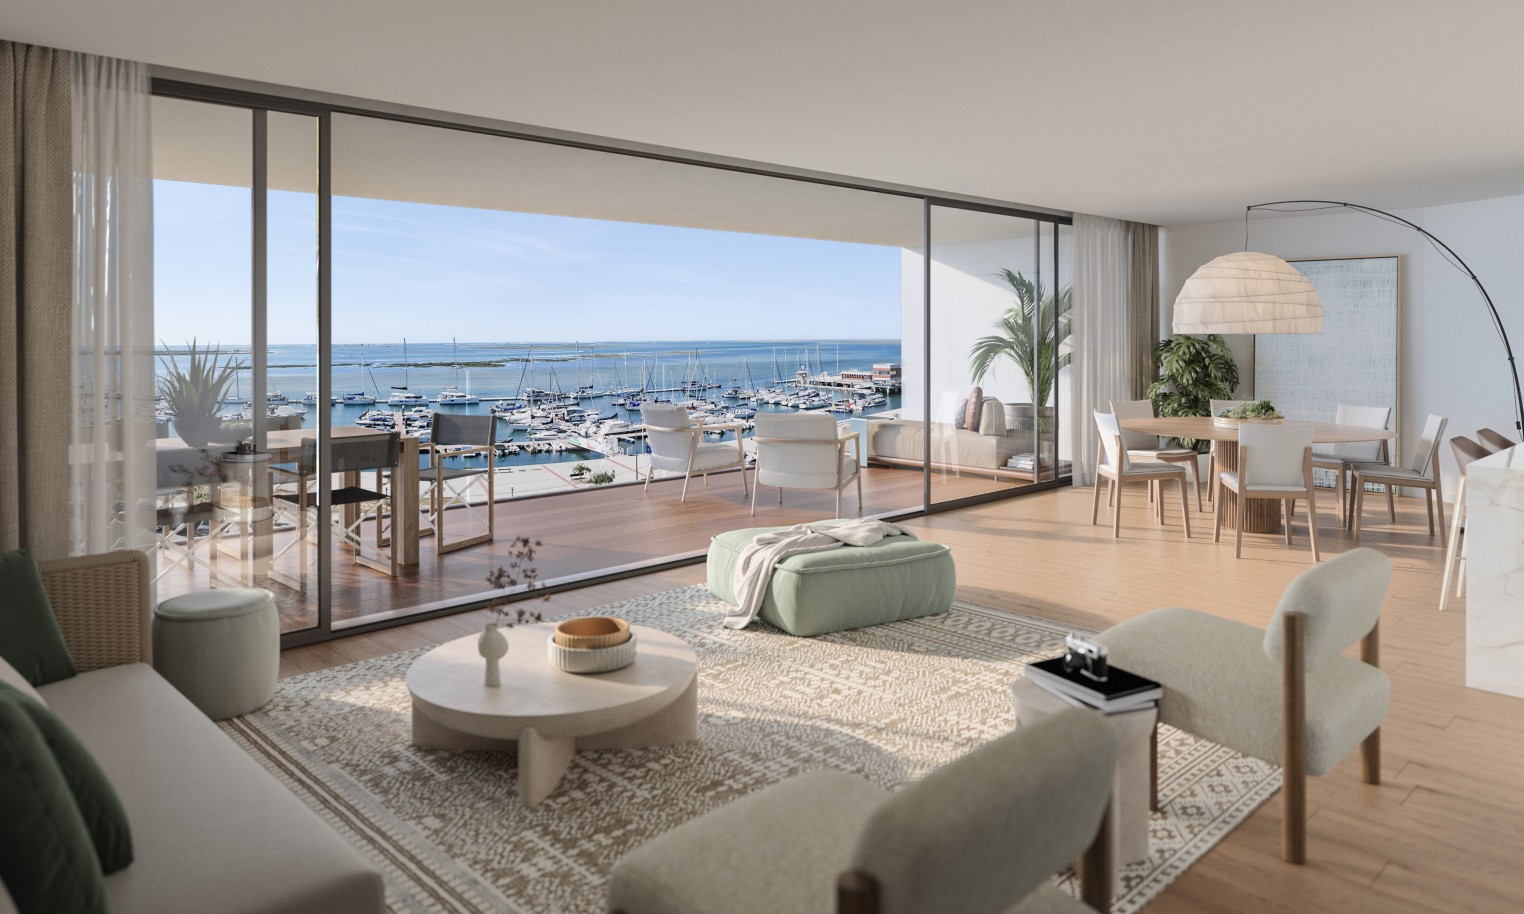 Appartements neufs avec vue sur mer, 1, 2 & 3 chambres, à vendre à Olhão, Algarve_243694